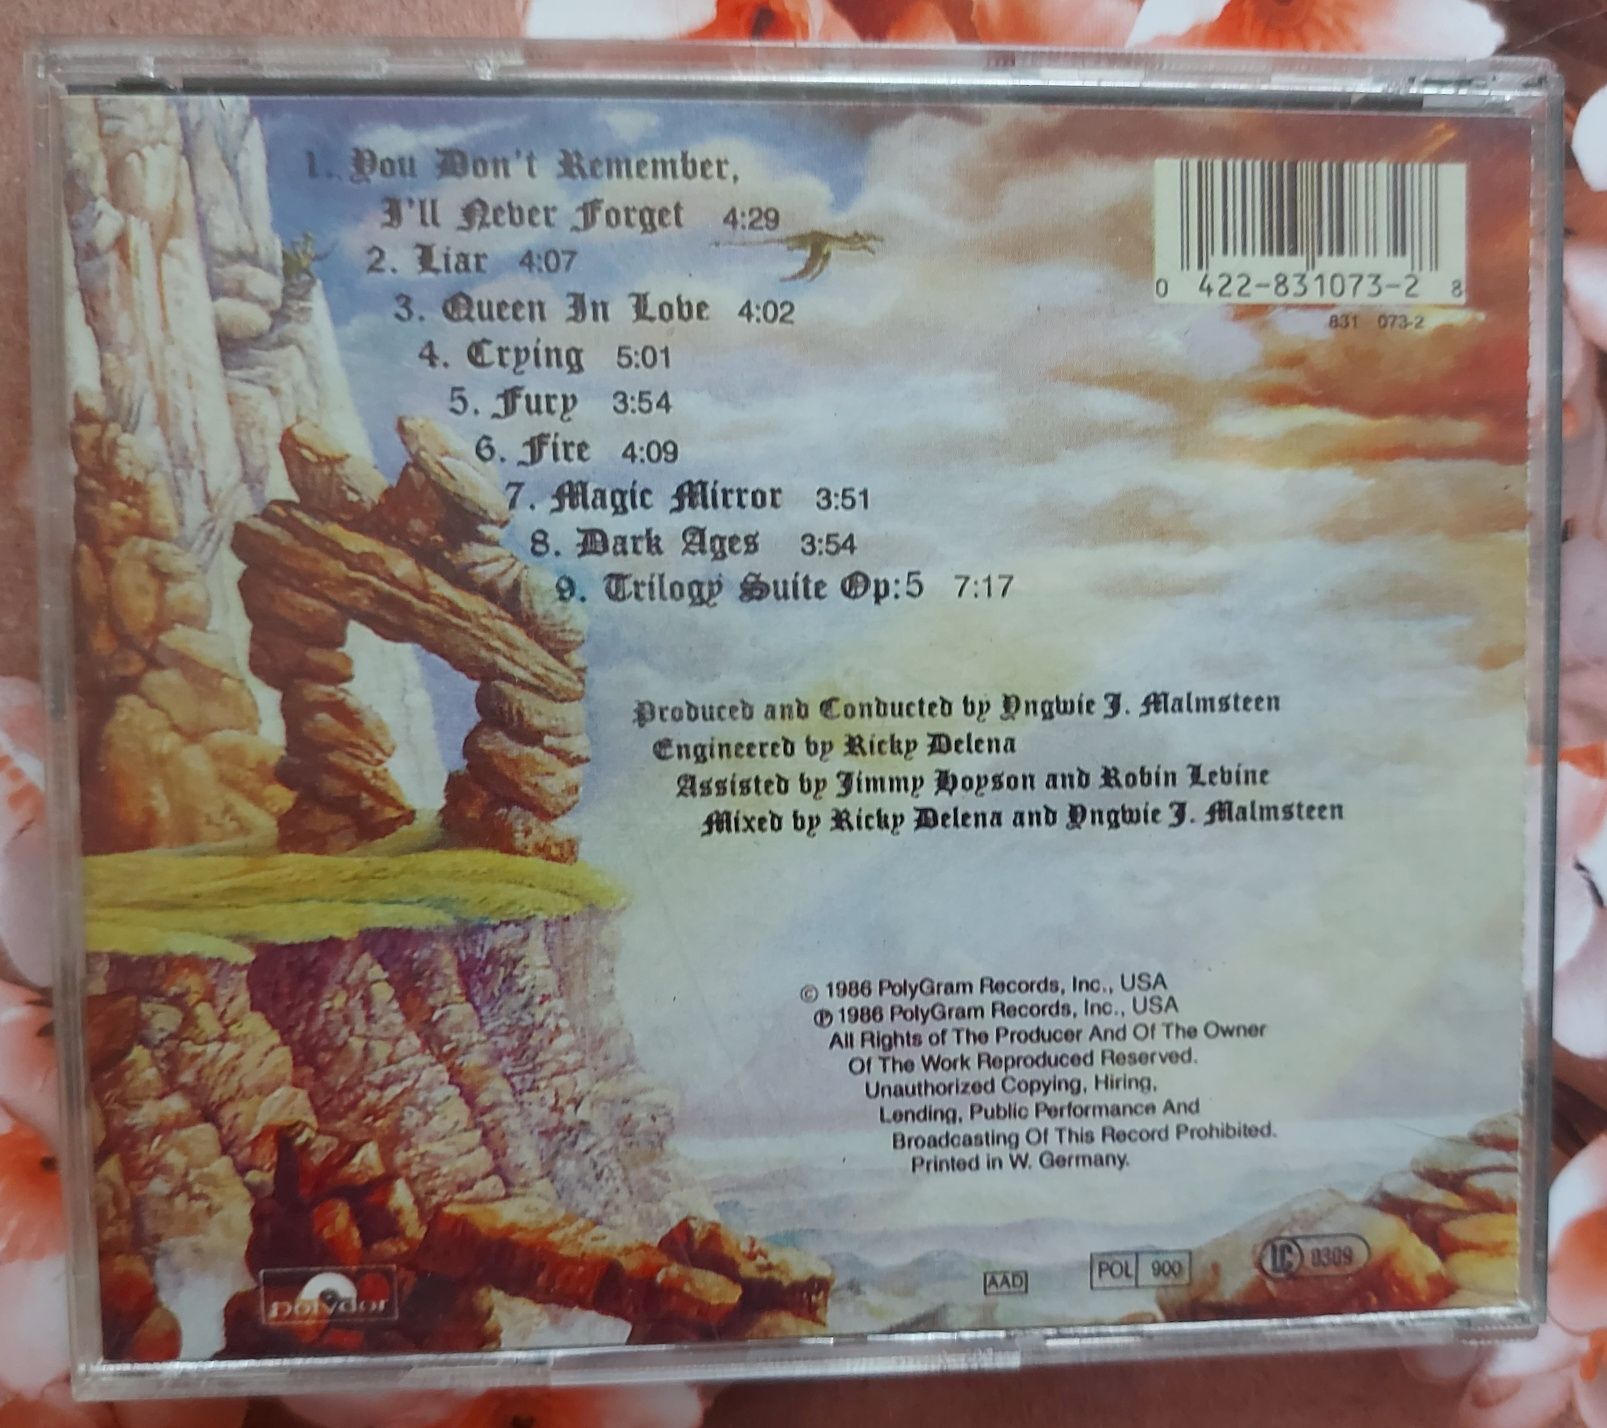 CD диск "Yngwie J. Malmsteen" Trilogy